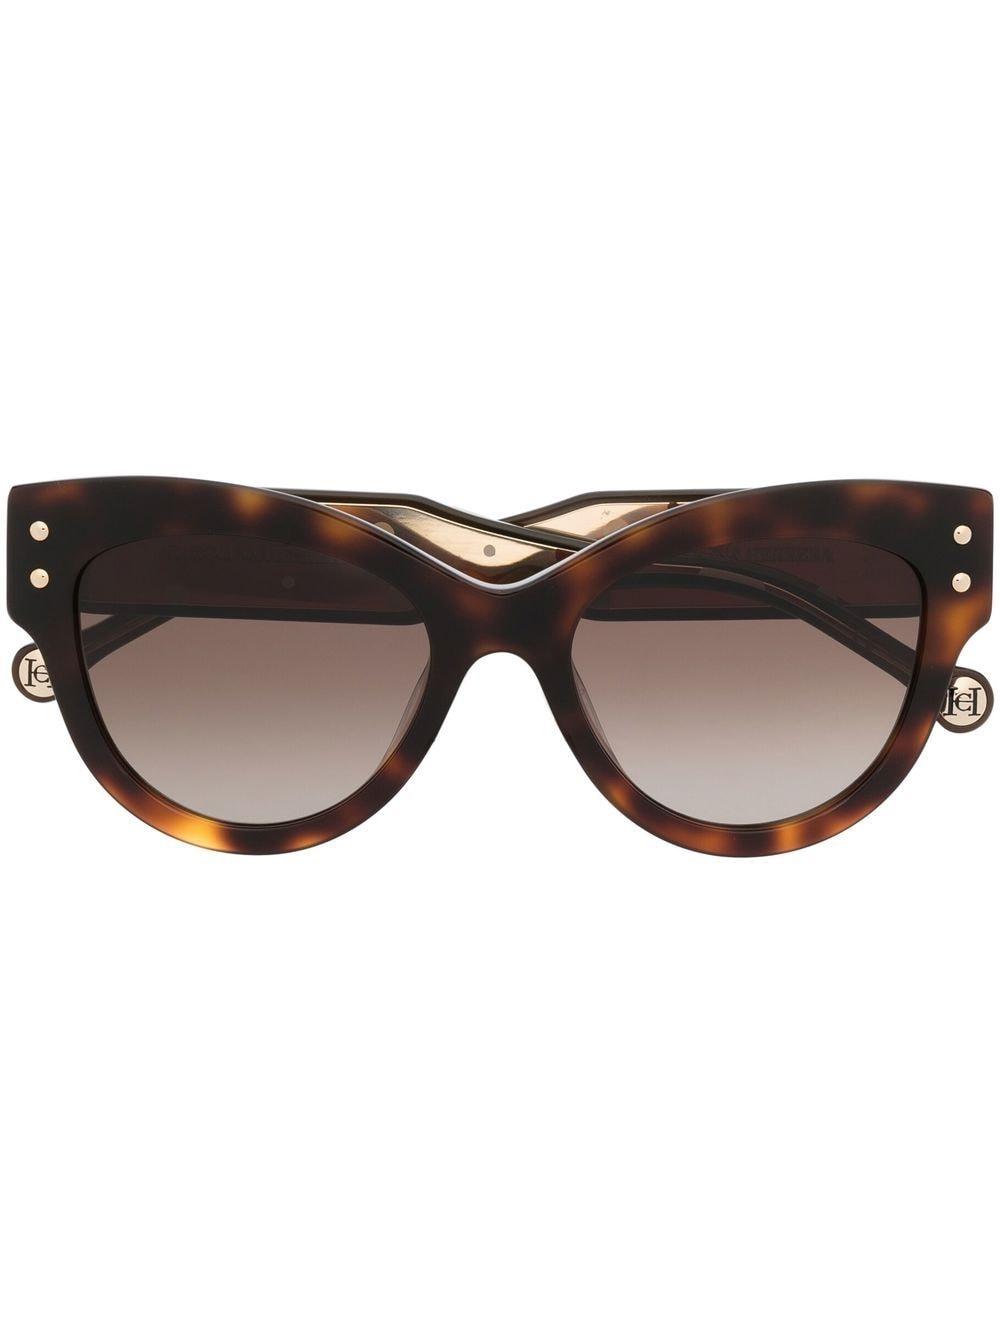 Carolina Herrera Tortoiseshell-effect Cat-eye Sunglasses in Brown | Lyst